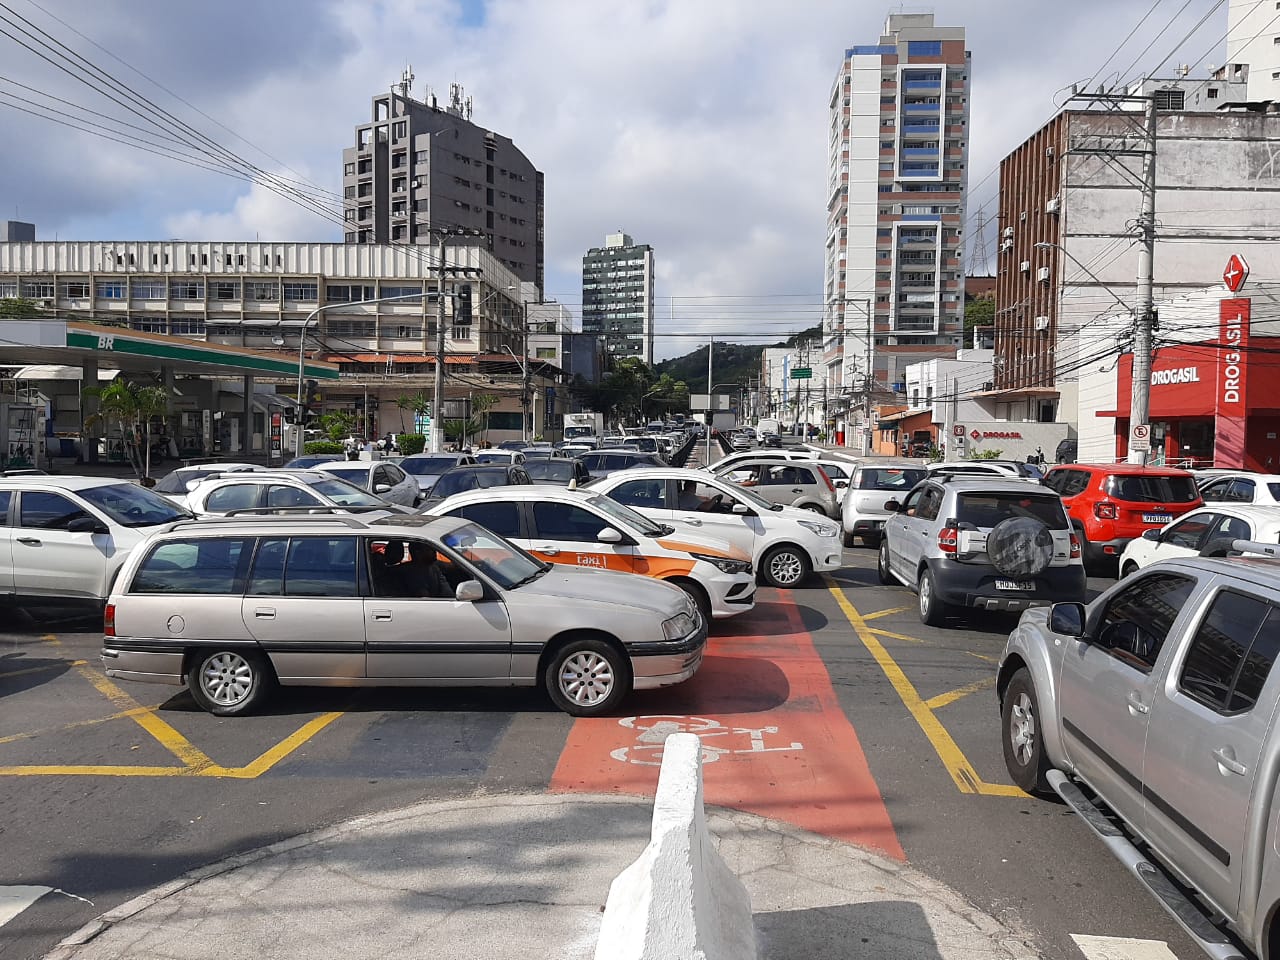 Problema nos sinais demandou paciência dos motoristas na manhã desta quarta-feira (6); Guarda Municipal chegou por volta das 9 horas para organizar o tráfego